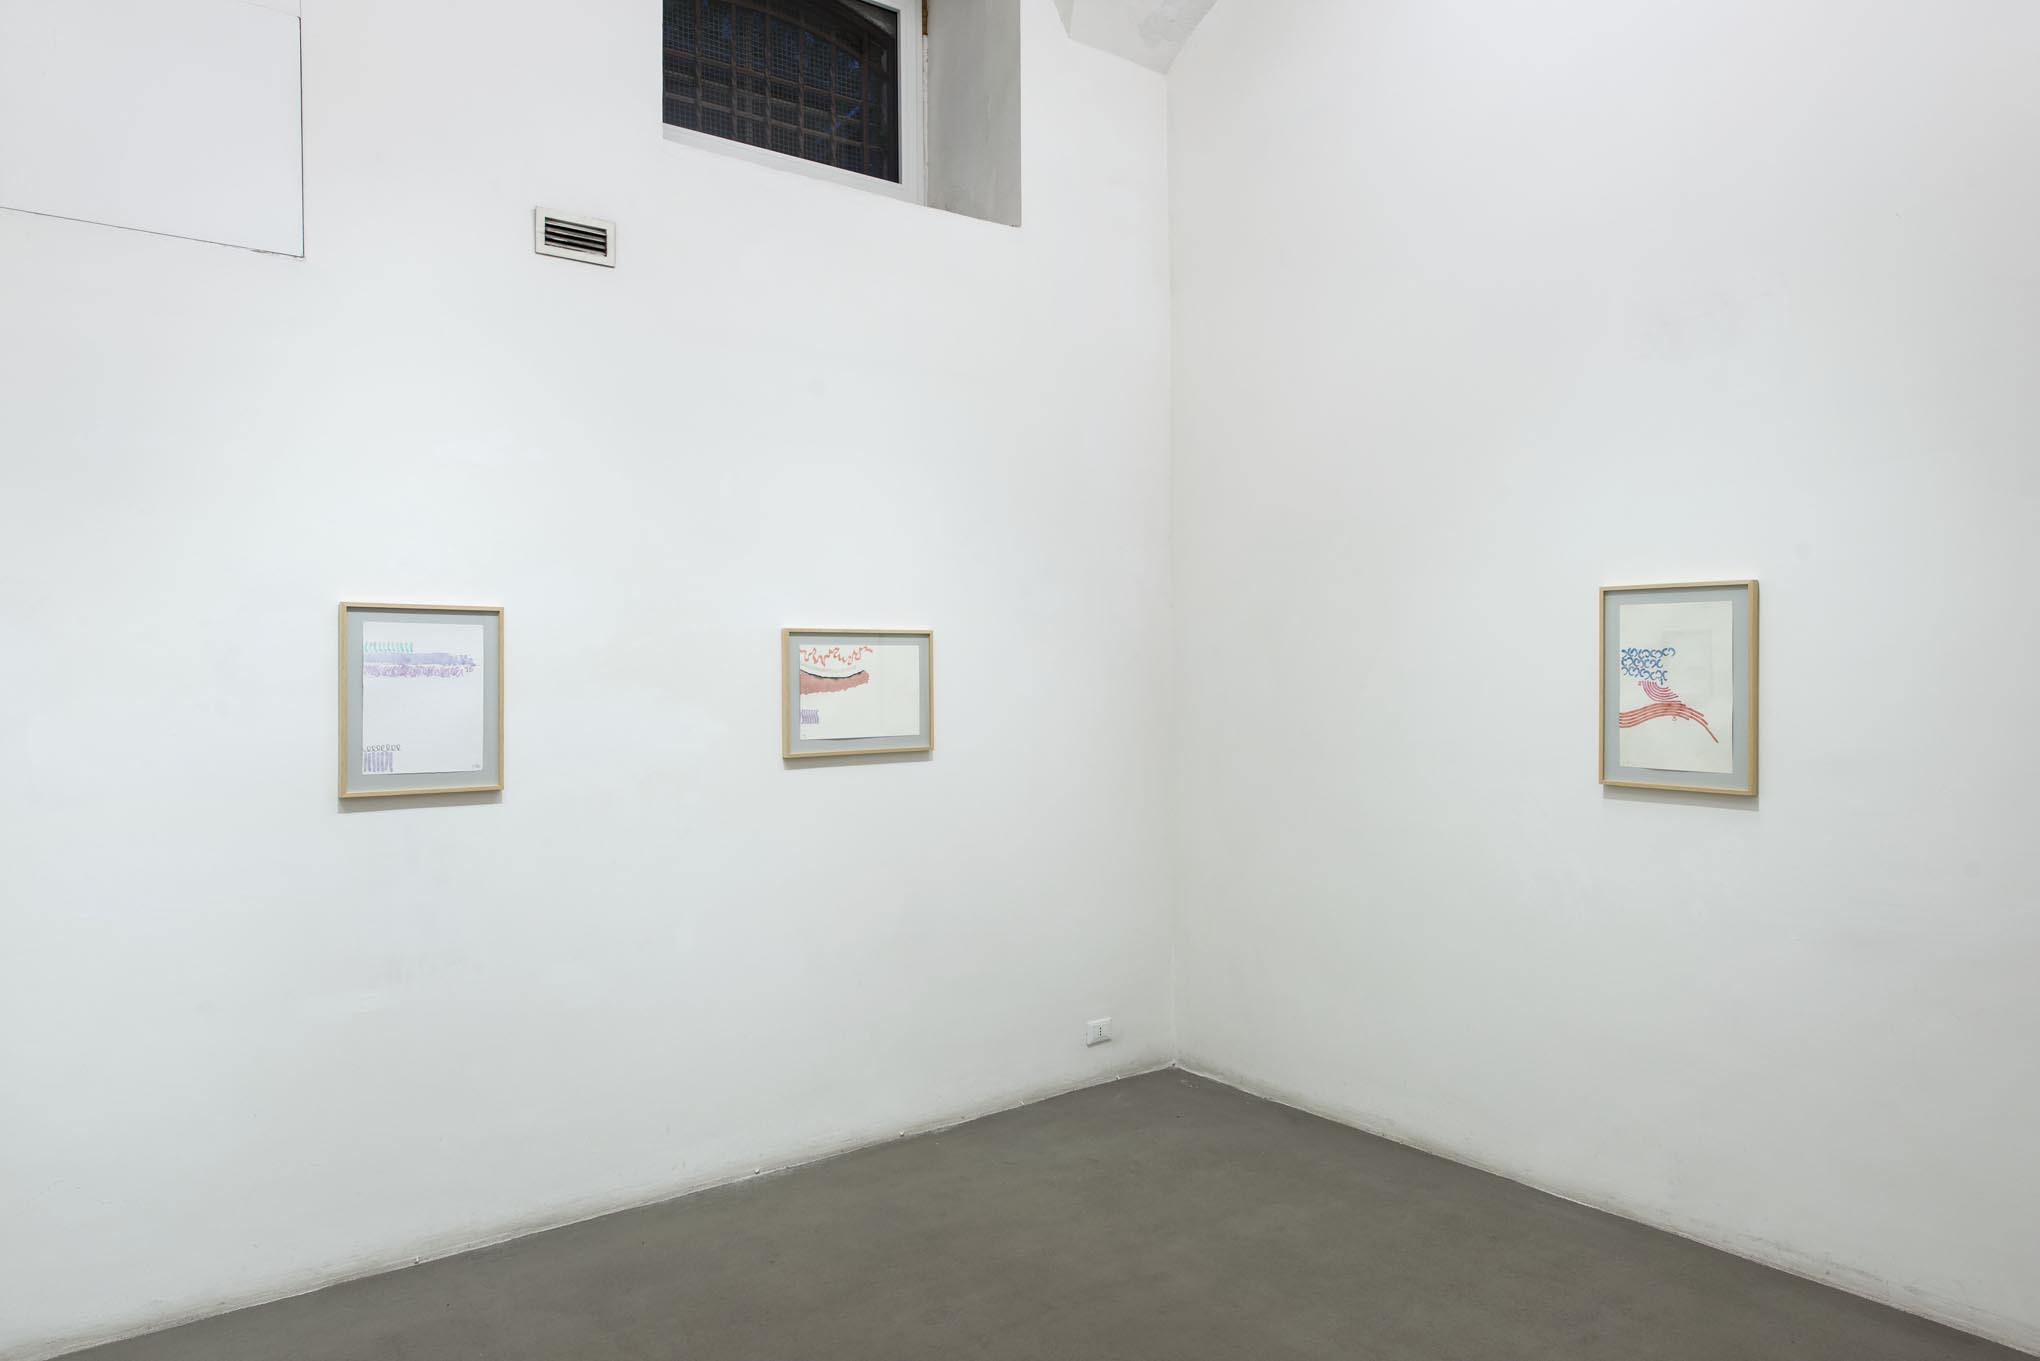 19. Giorgio Griffa: Works on Paper
Installation view, Roma, 2014, foto Giorgio Benni